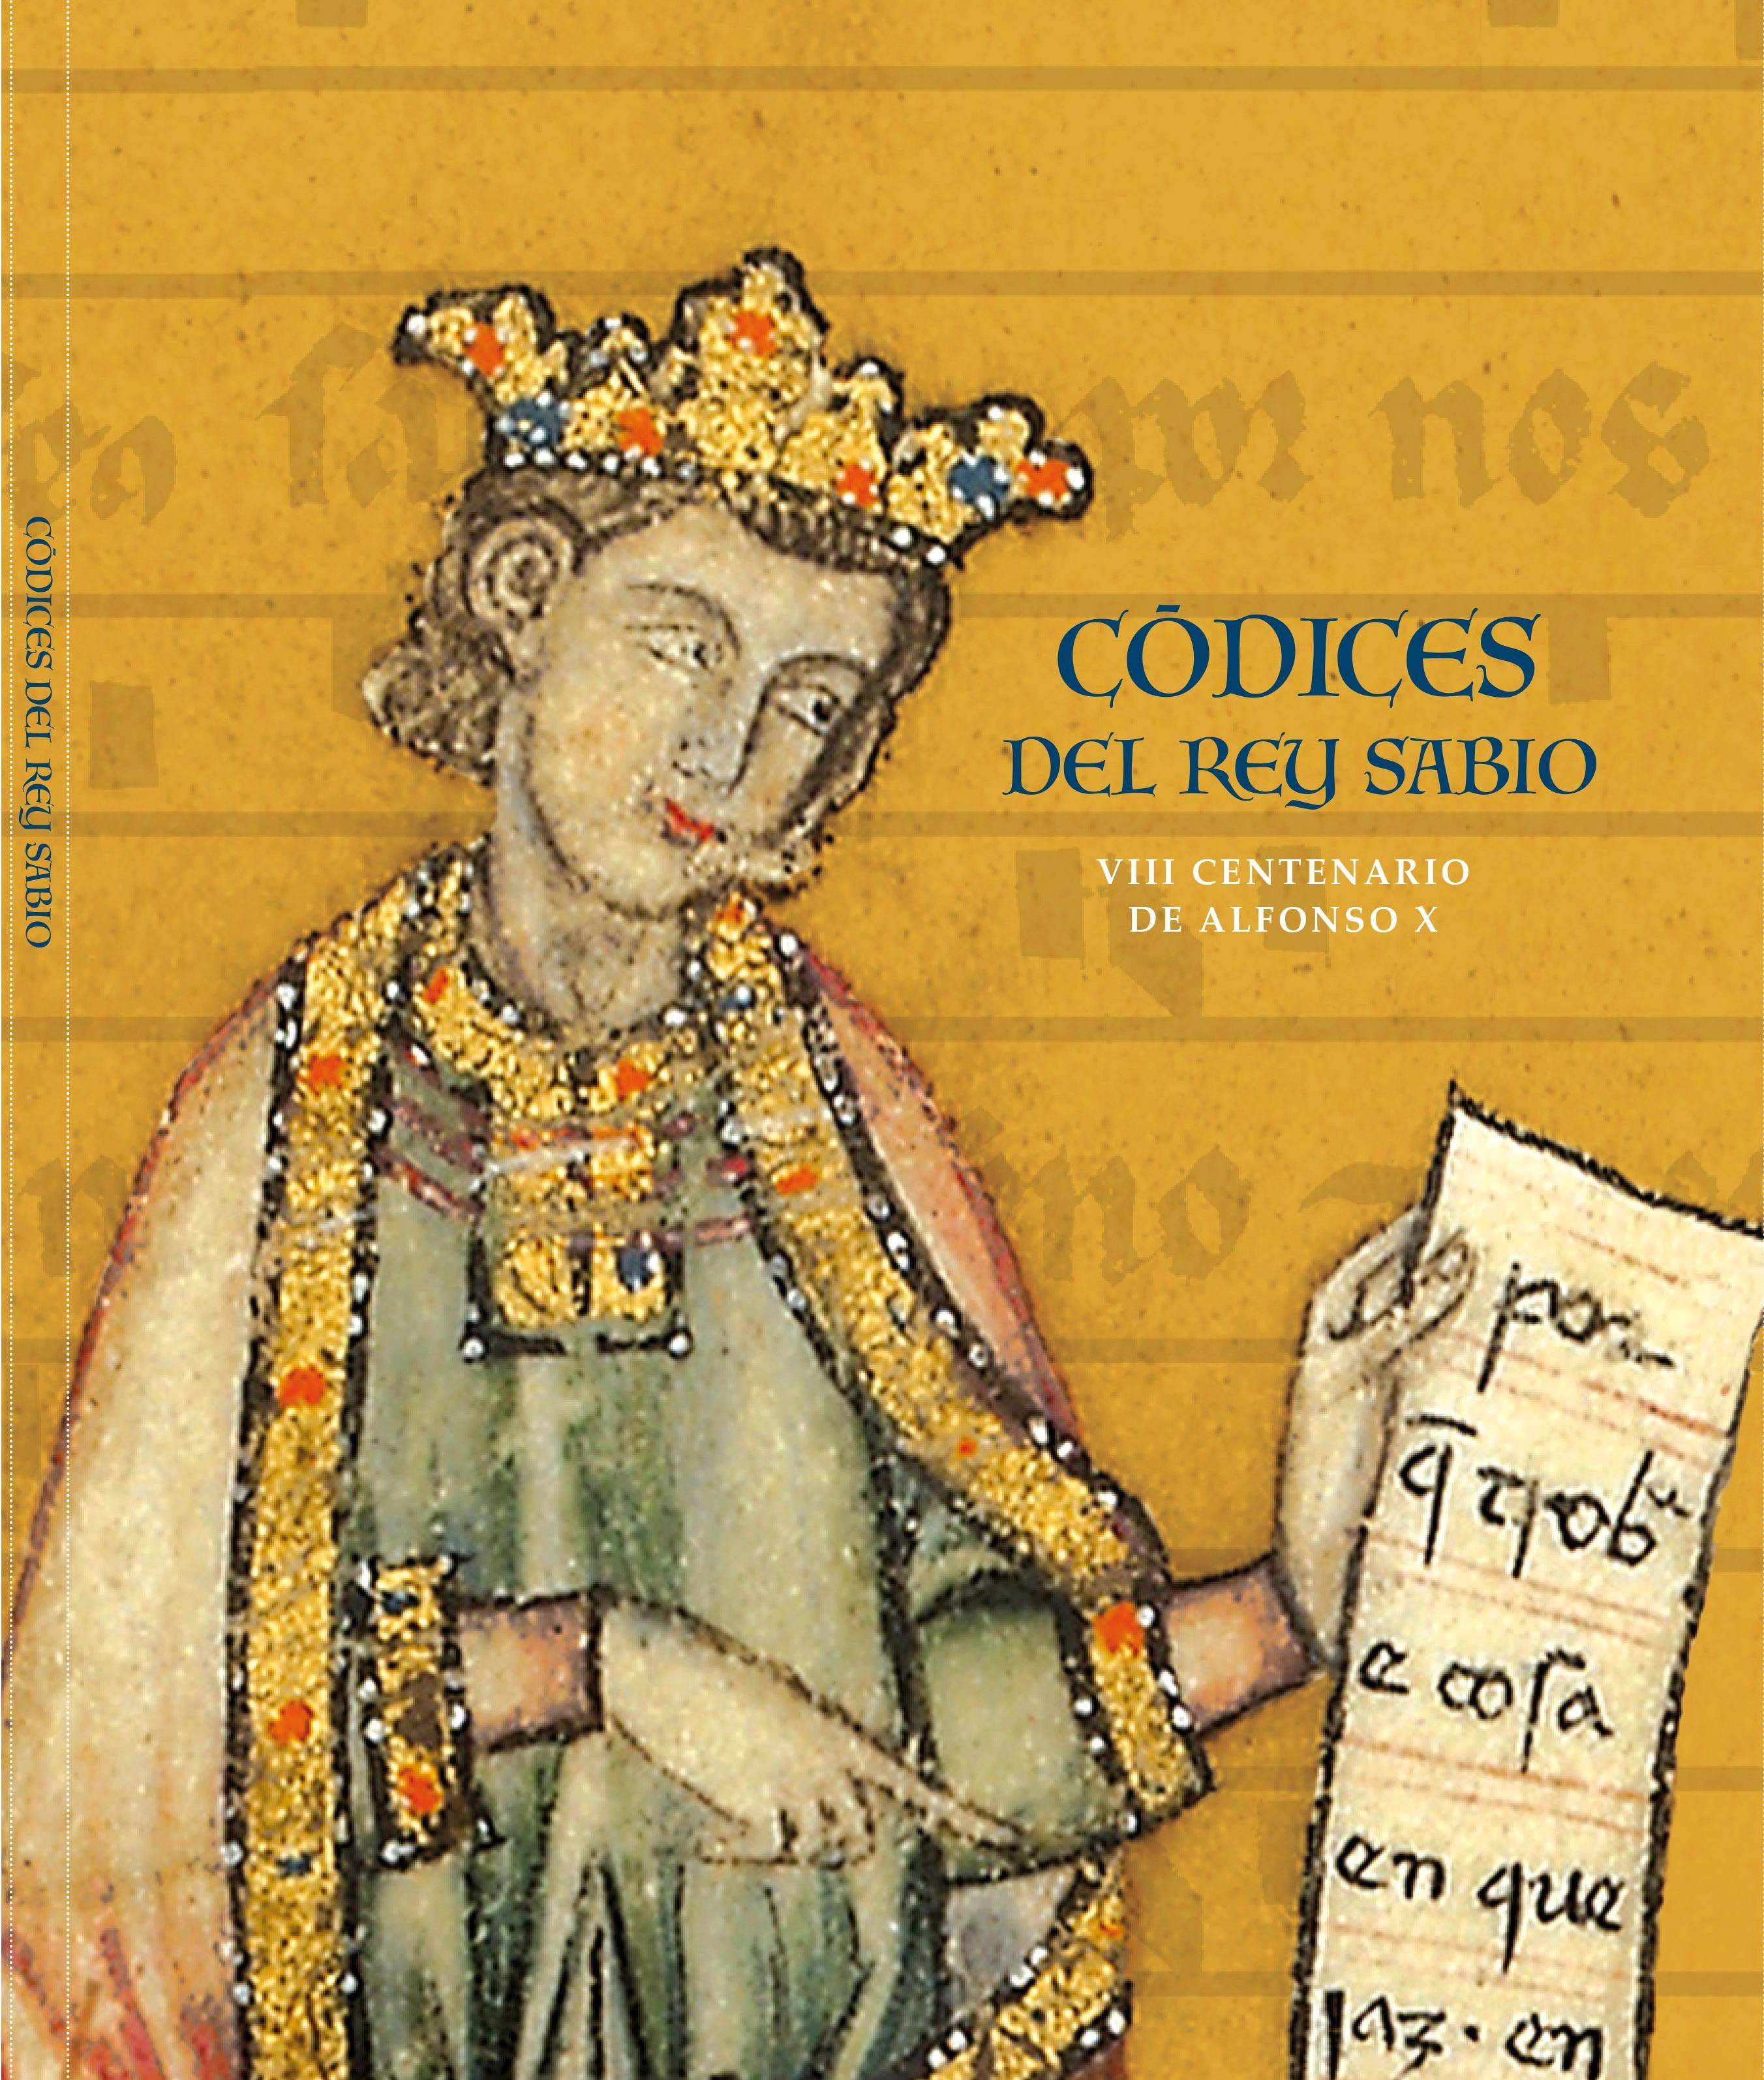 Códices del Rey Sabio "VIII centenario de Alfonso X"